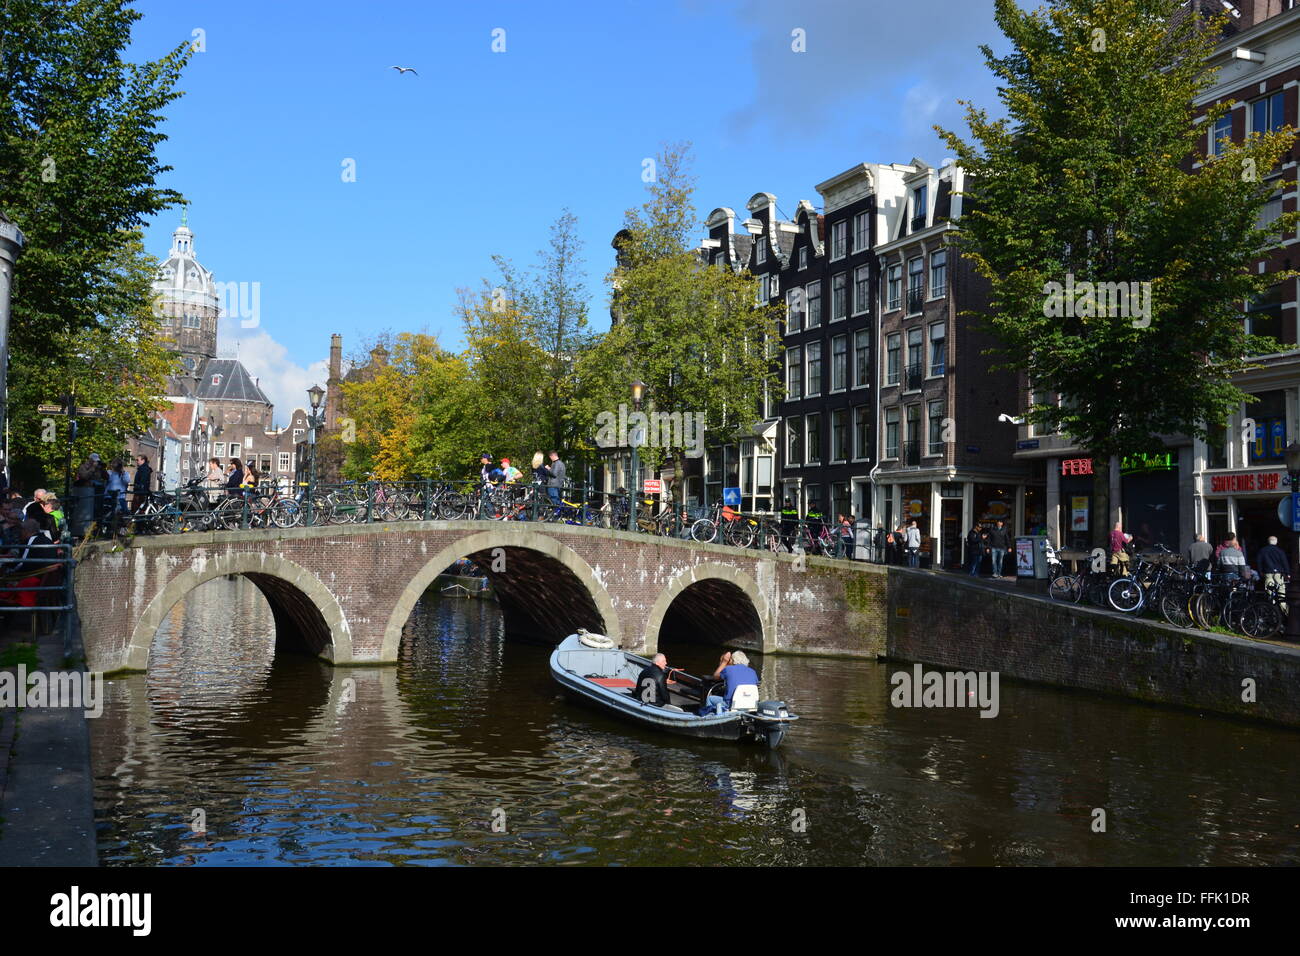 Un piccolo canale viaggi in barca sotto un ponte pedonale nel quartiere a luci rosse di Amsterdam, Paesi Bassi. Foto Stock